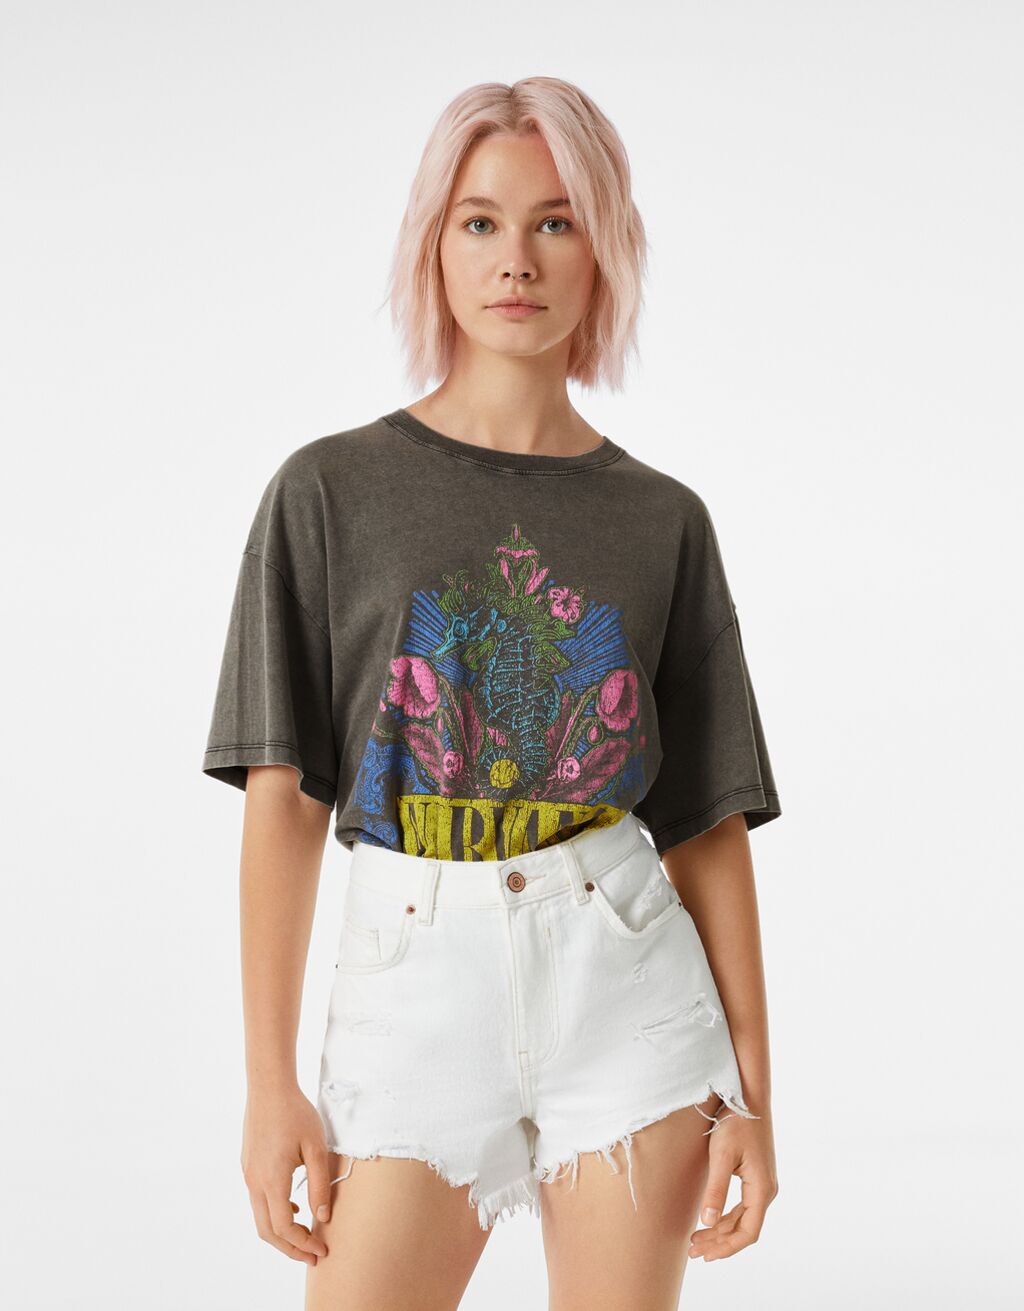 Nirvana-Seahorse-T-Shirt